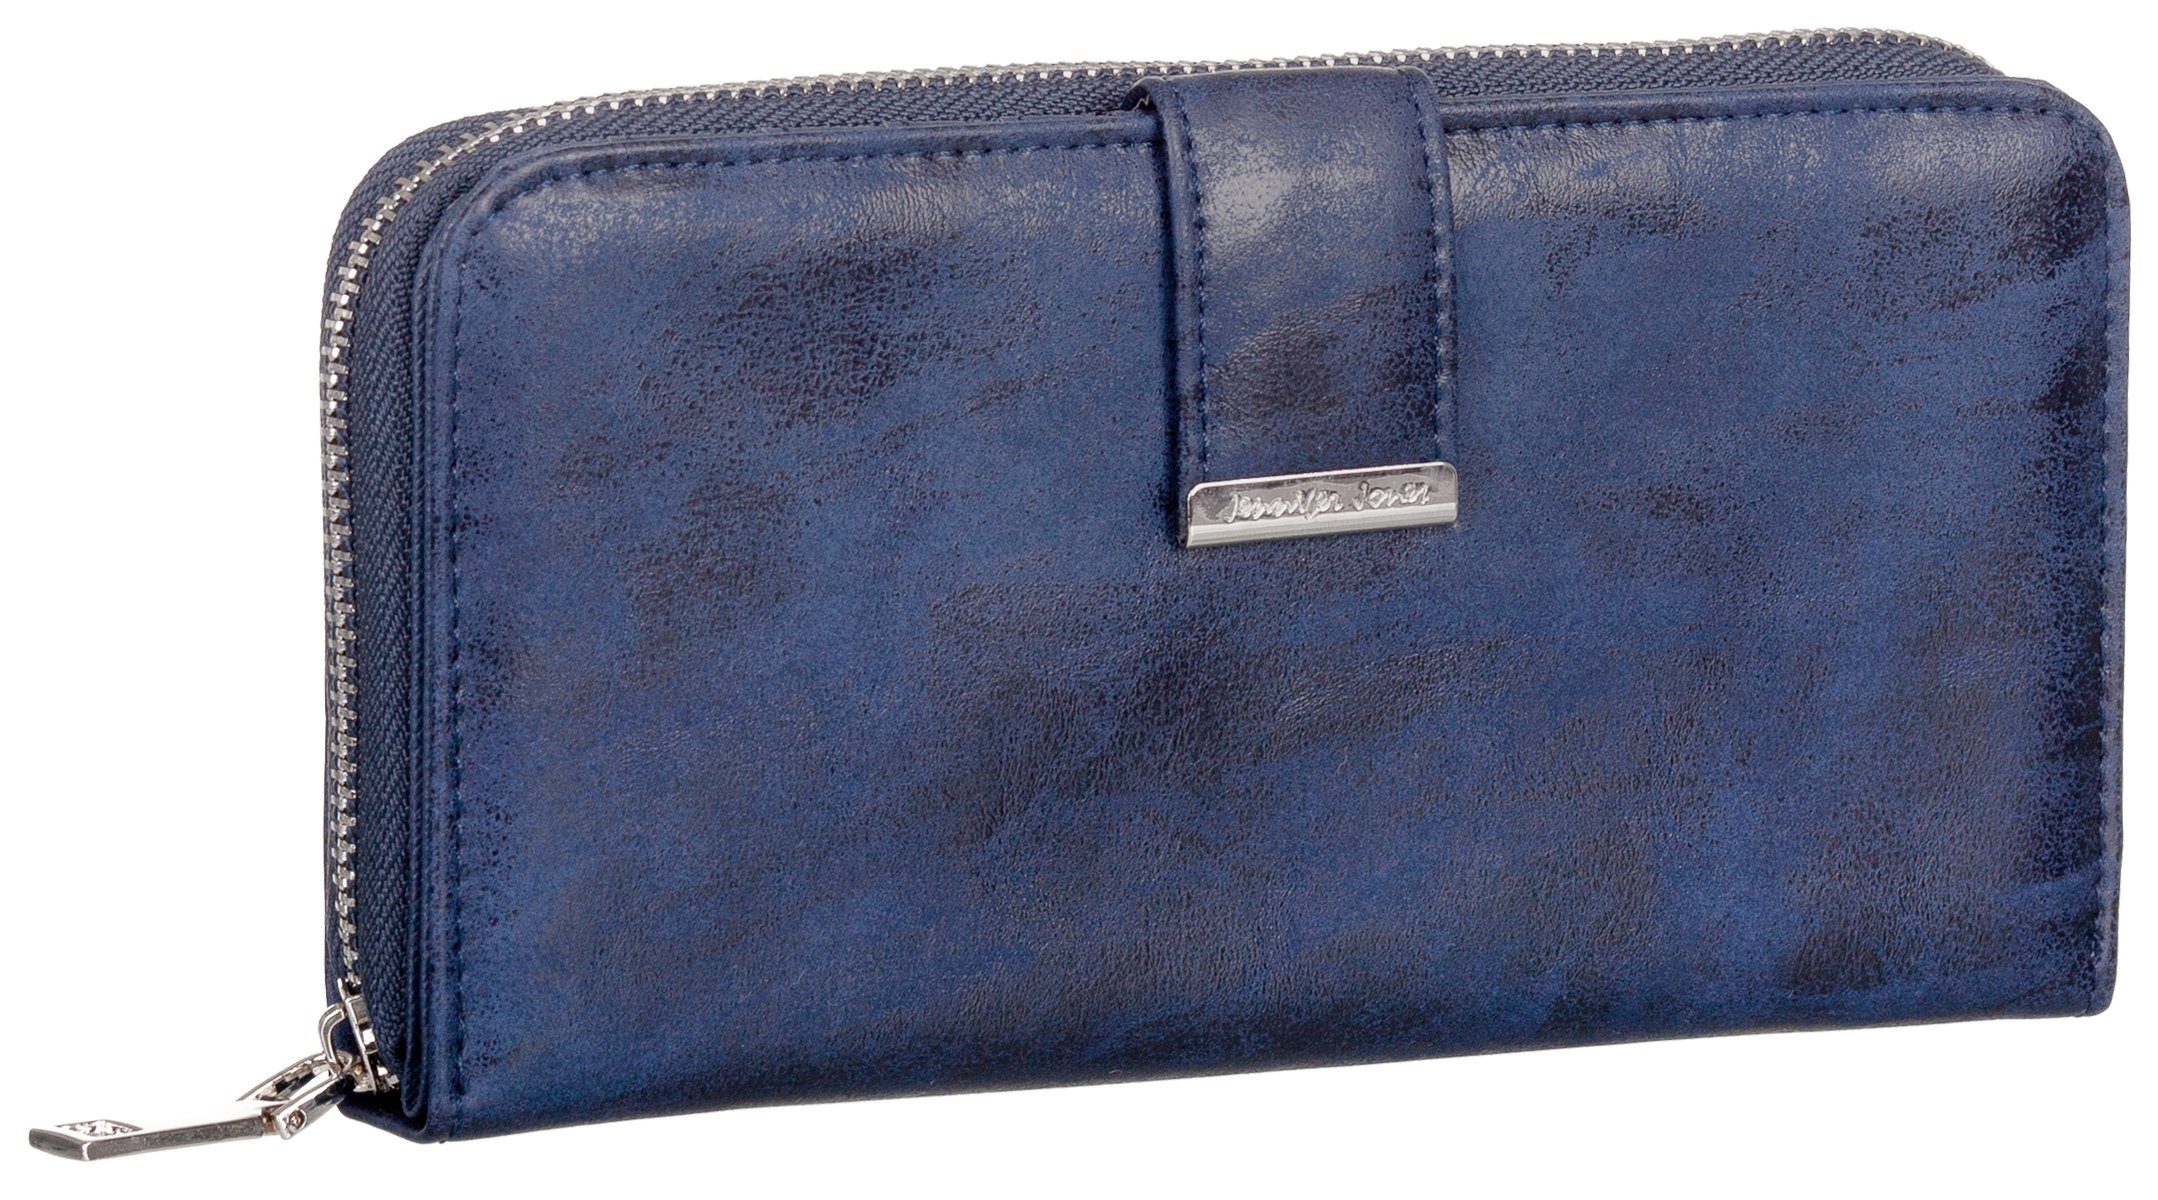 Jennifer Jones Geldbörse, Damen Geldbörse klappbar mit Reißverschluss Portemonnaie Geldbeutel marineblau